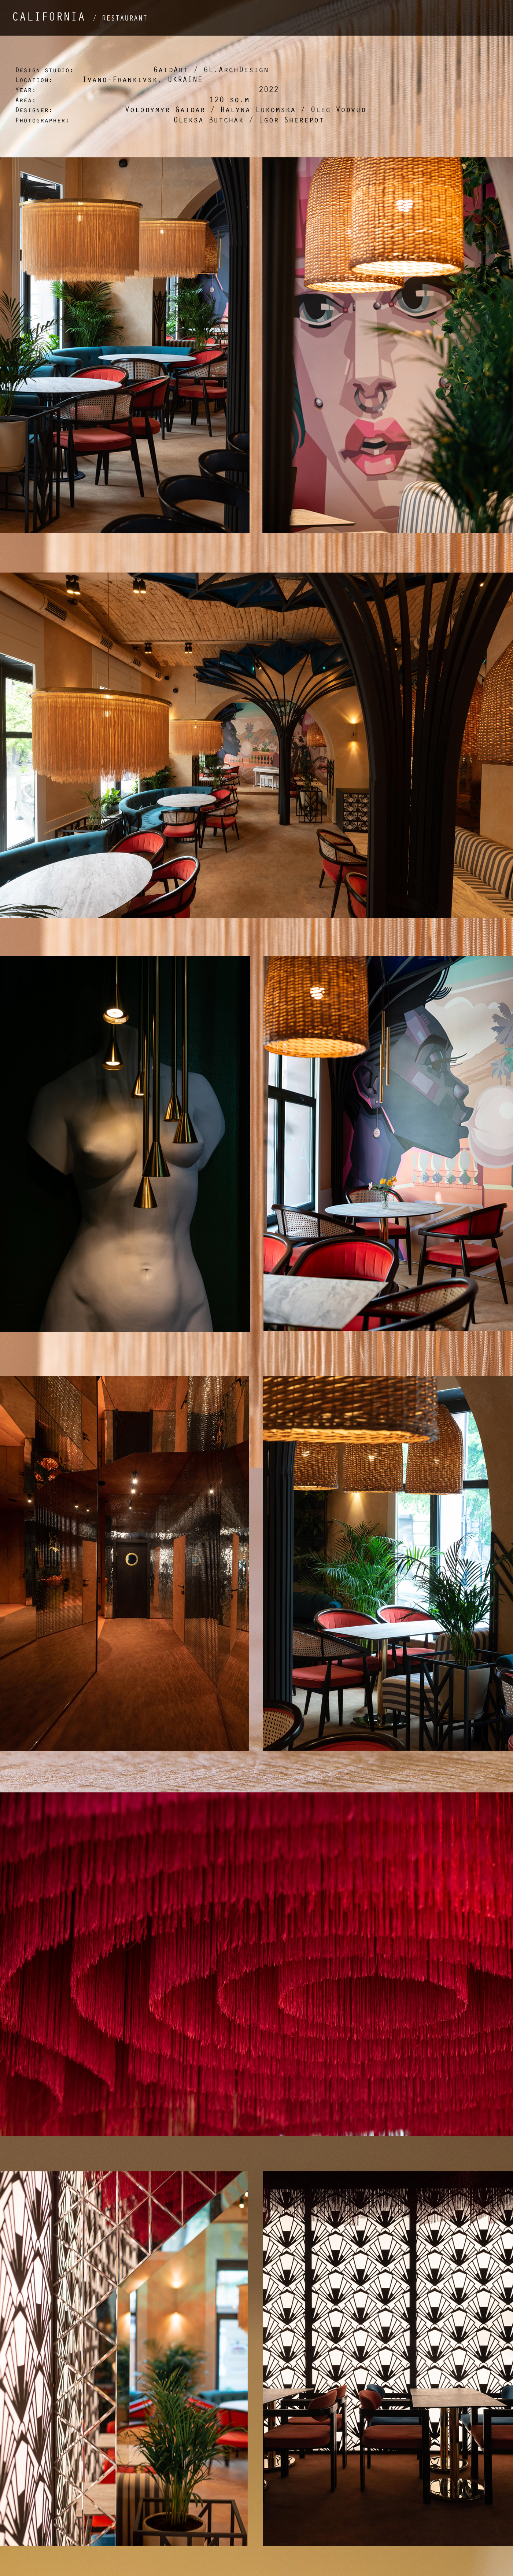 restaurant design Interior restaurant Venus de Milo ar deco interior graffiti red ceiling sand color interior sculpture interior realization